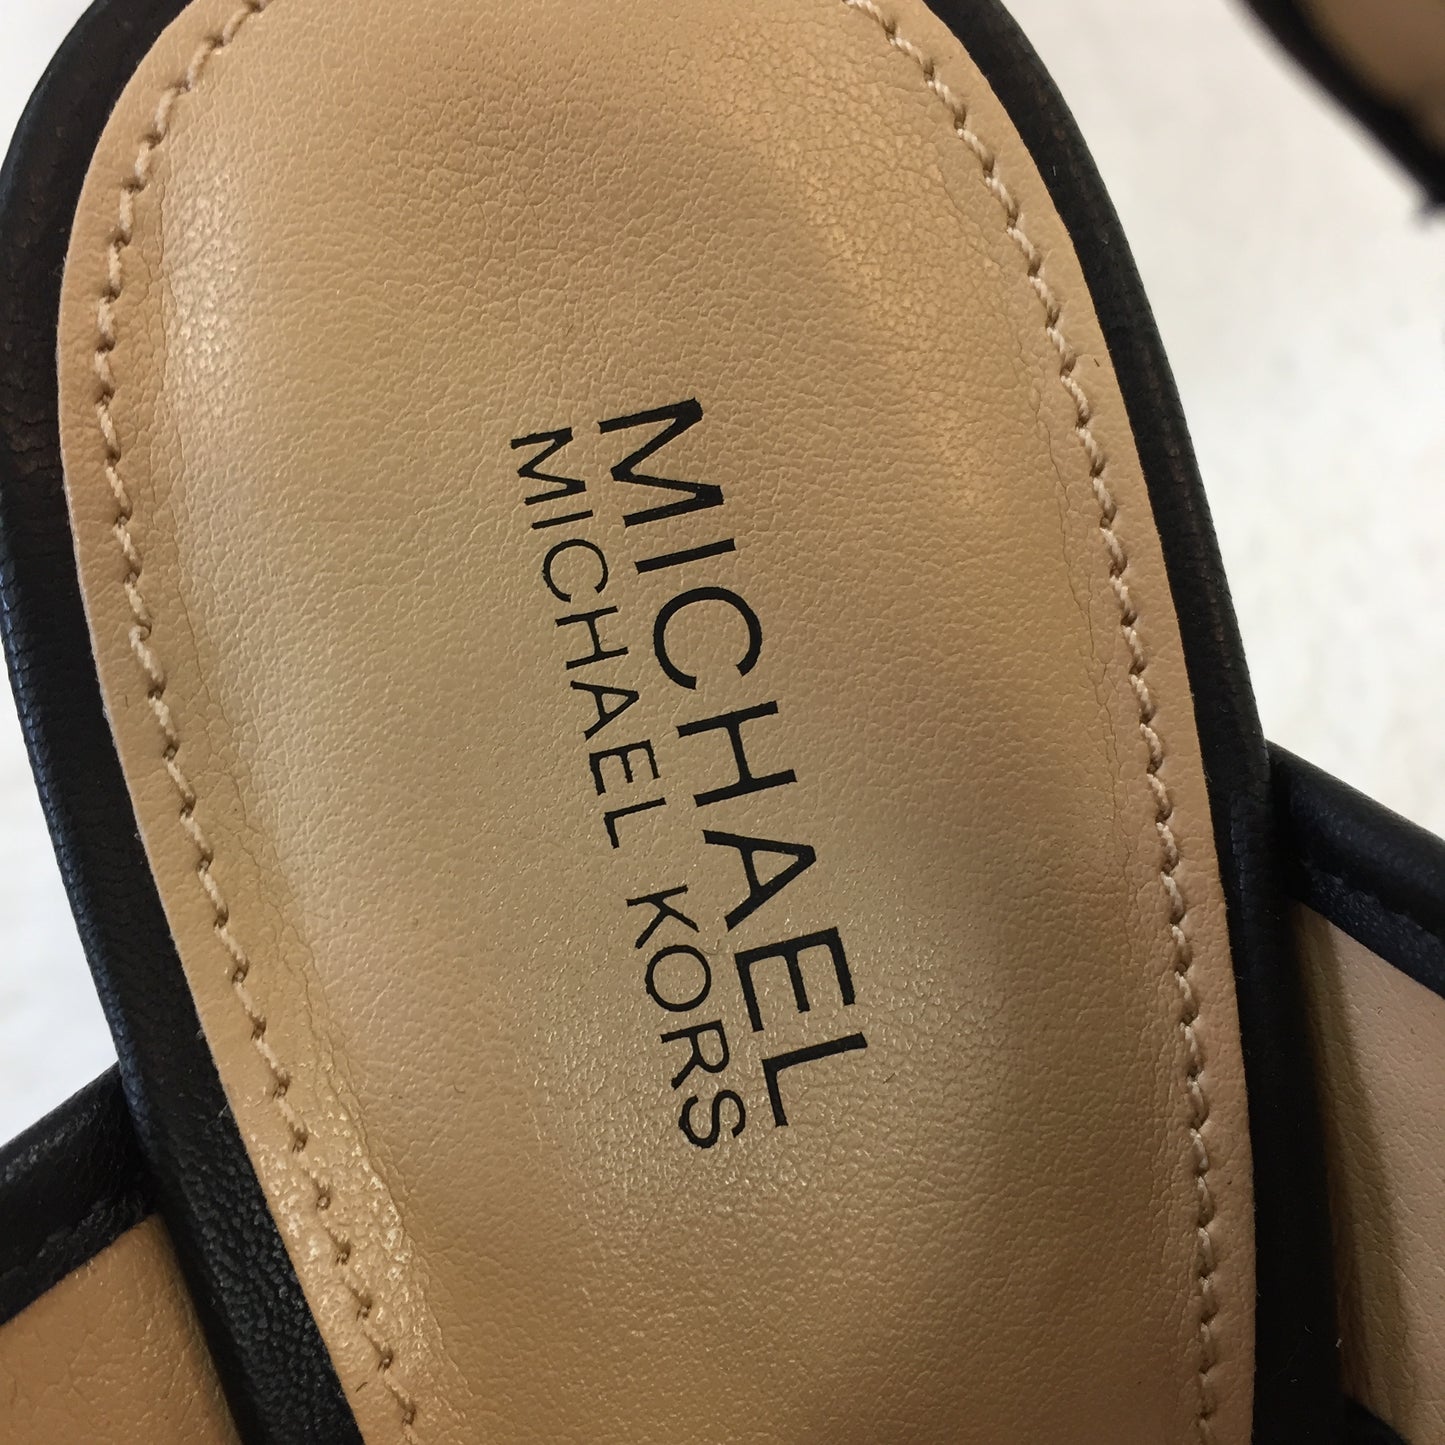 Authentic Michael Kors Canvas Wedge Sandals Women's size 39 / 8